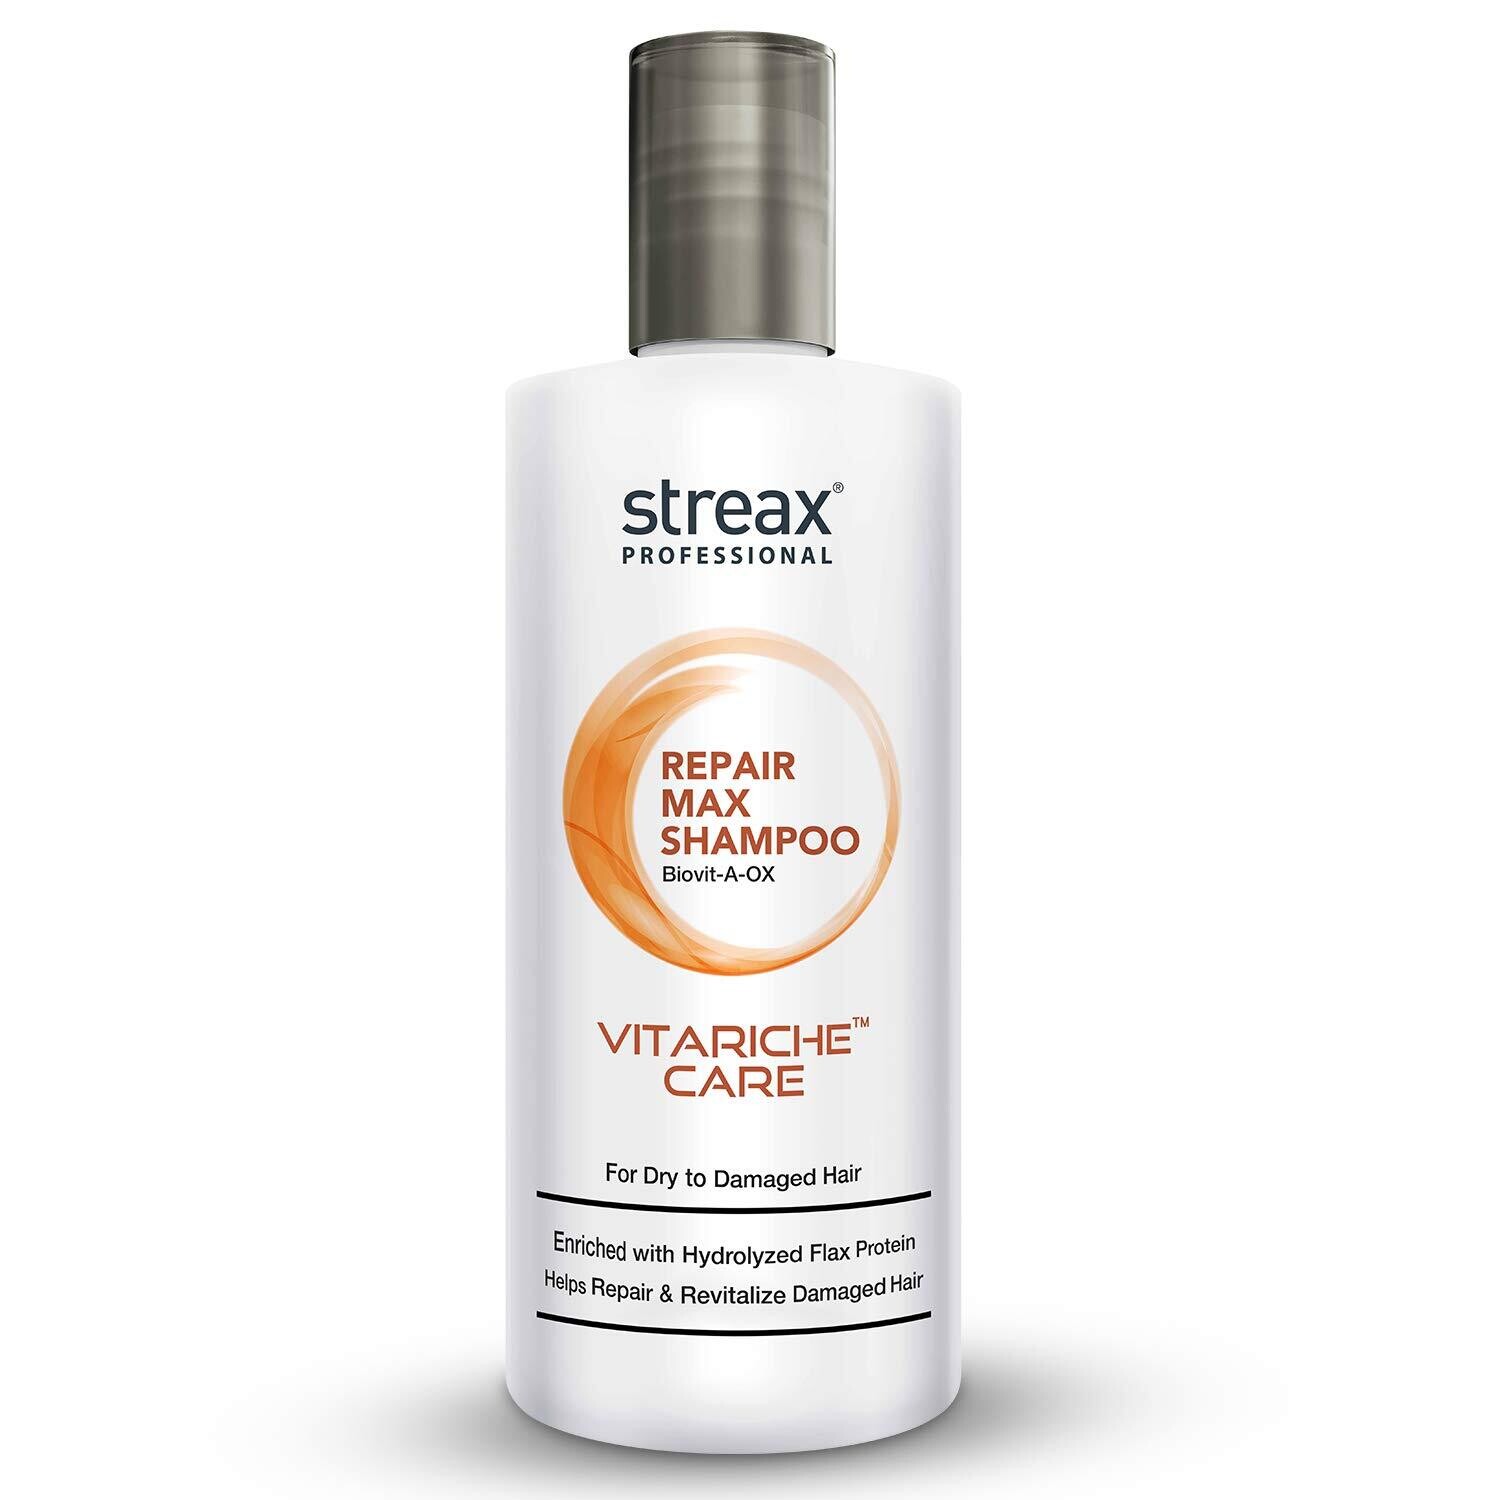 Streax Professional Repair Maxshampoo Vitariche Care 300-Ml